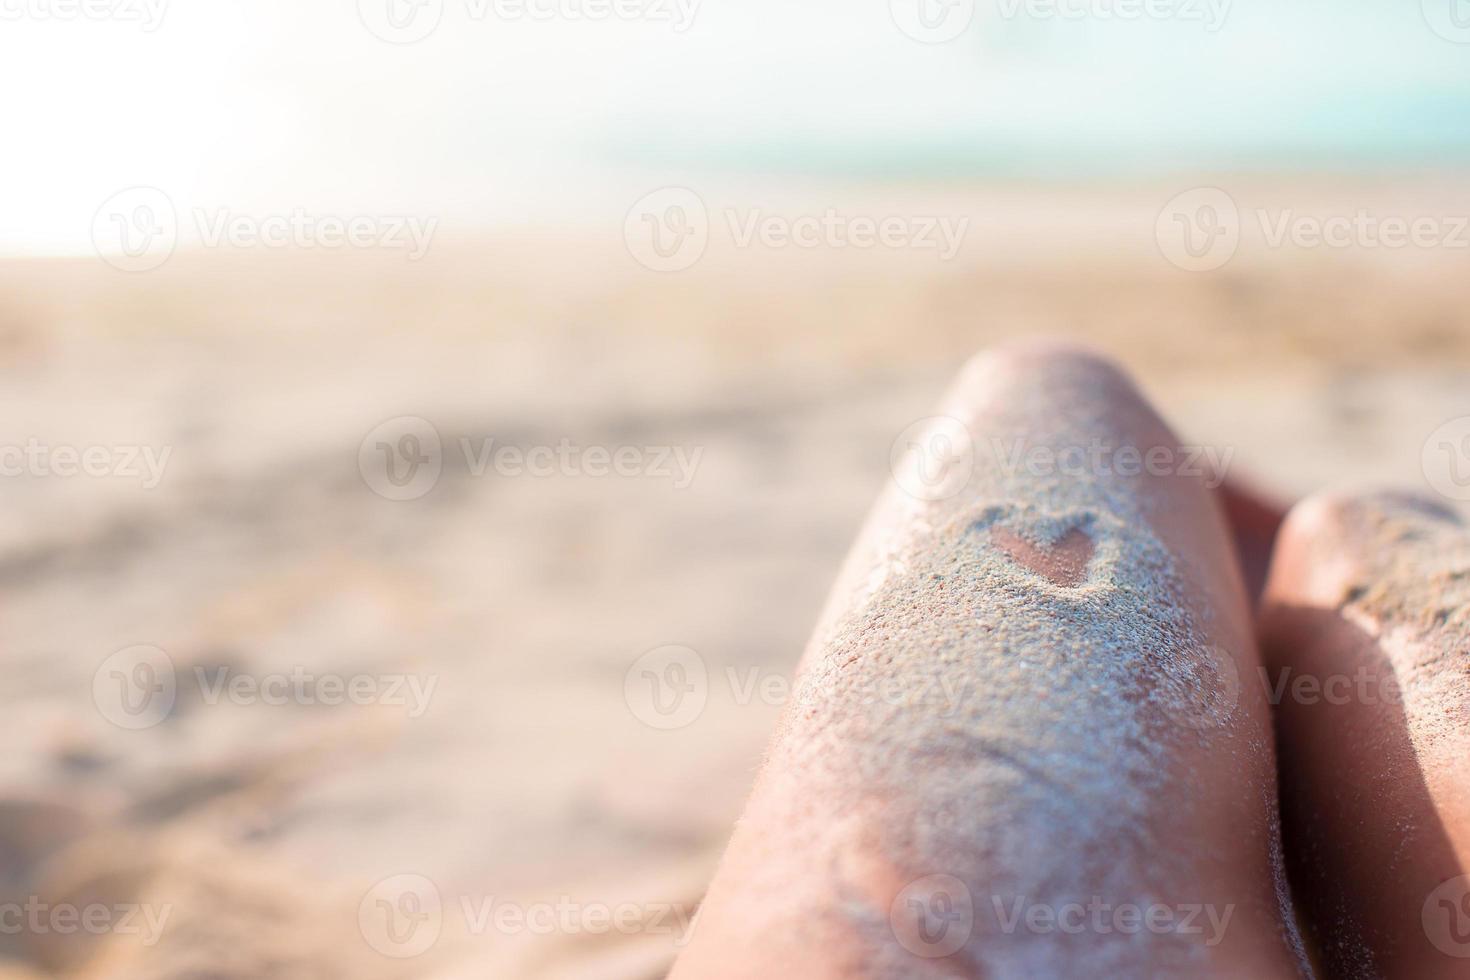 vrouw voeten met hart tekening door zand foto